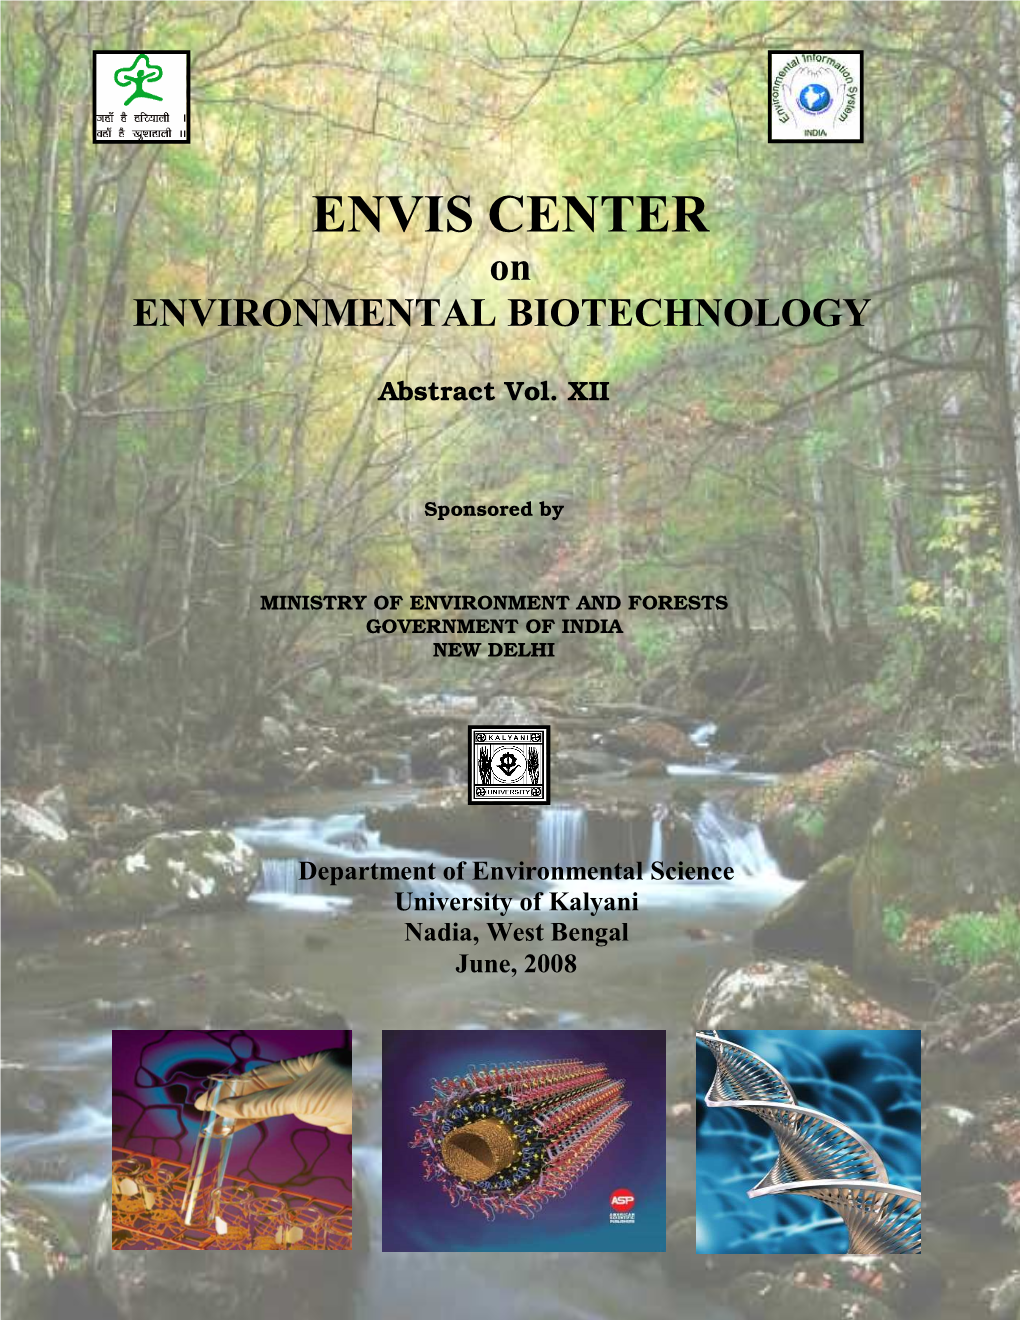 ENVIS CENTER on ENVIRONMENTAL BIOTECHNOLOGY